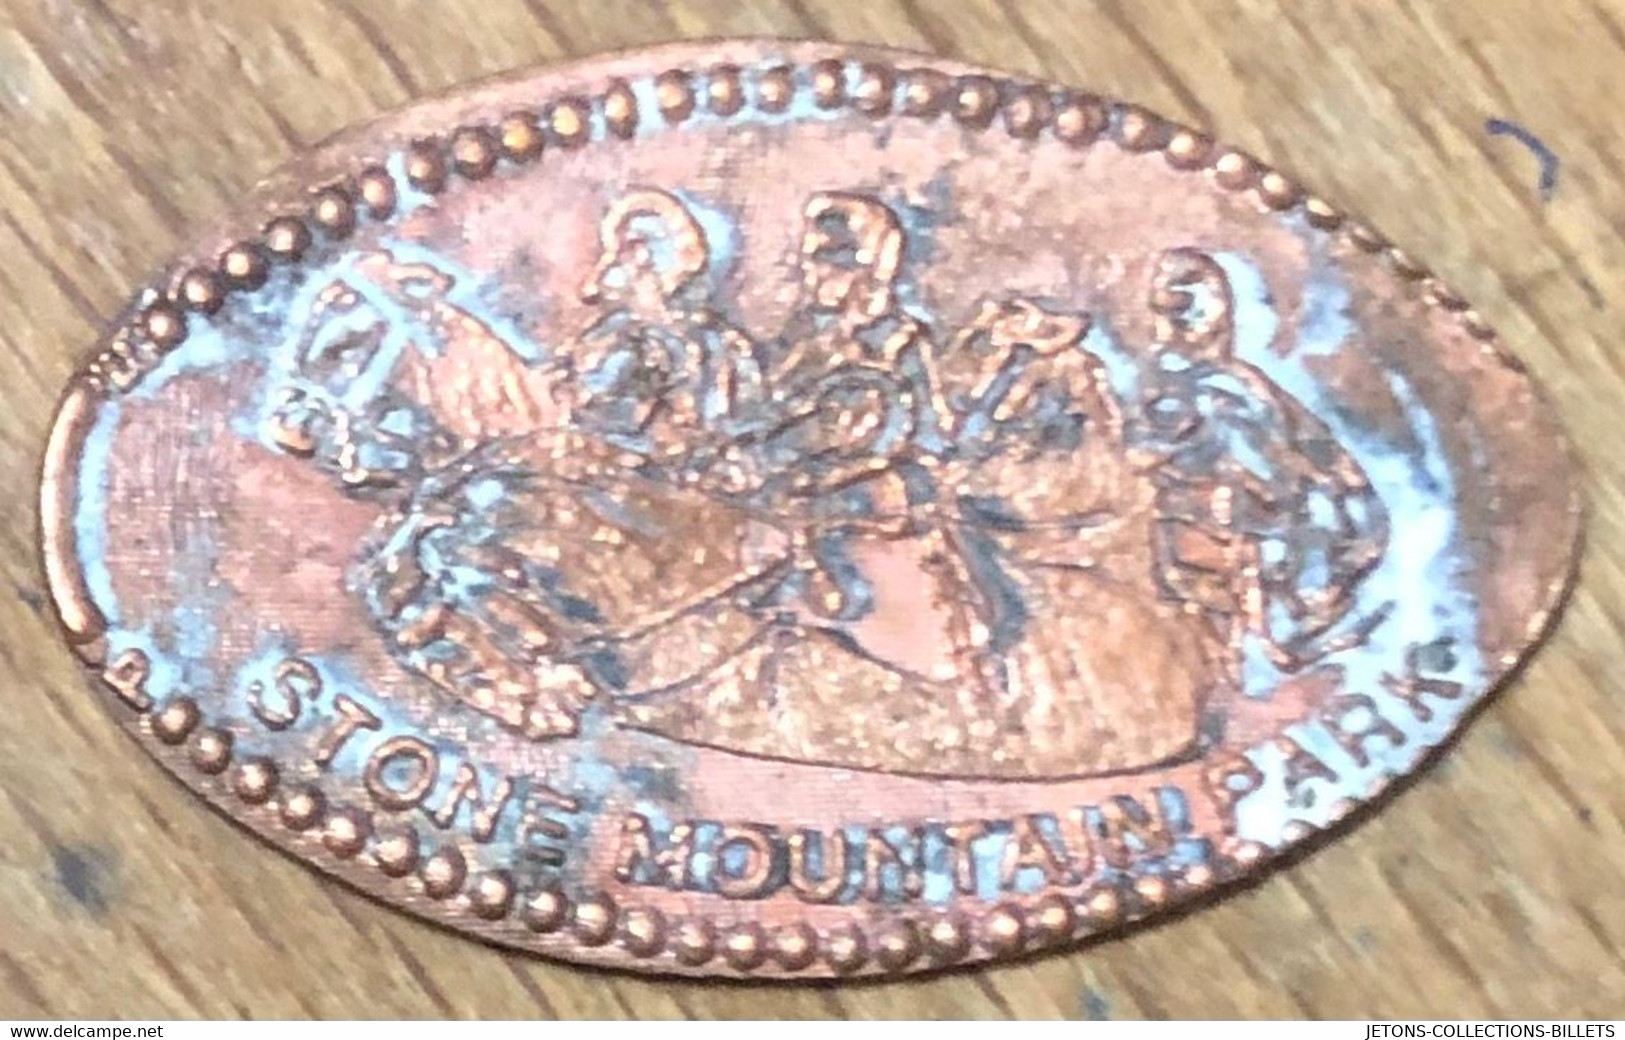 ÉTATS-UNIS USA STONE MOUNTAIN PARK PIÈCE ÉCRASÉE PENNY ELONGATED COIN MEDAILLE TOURISTIQUE MEDALS TOKENS - Monedas Elongadas (elongated Coins)